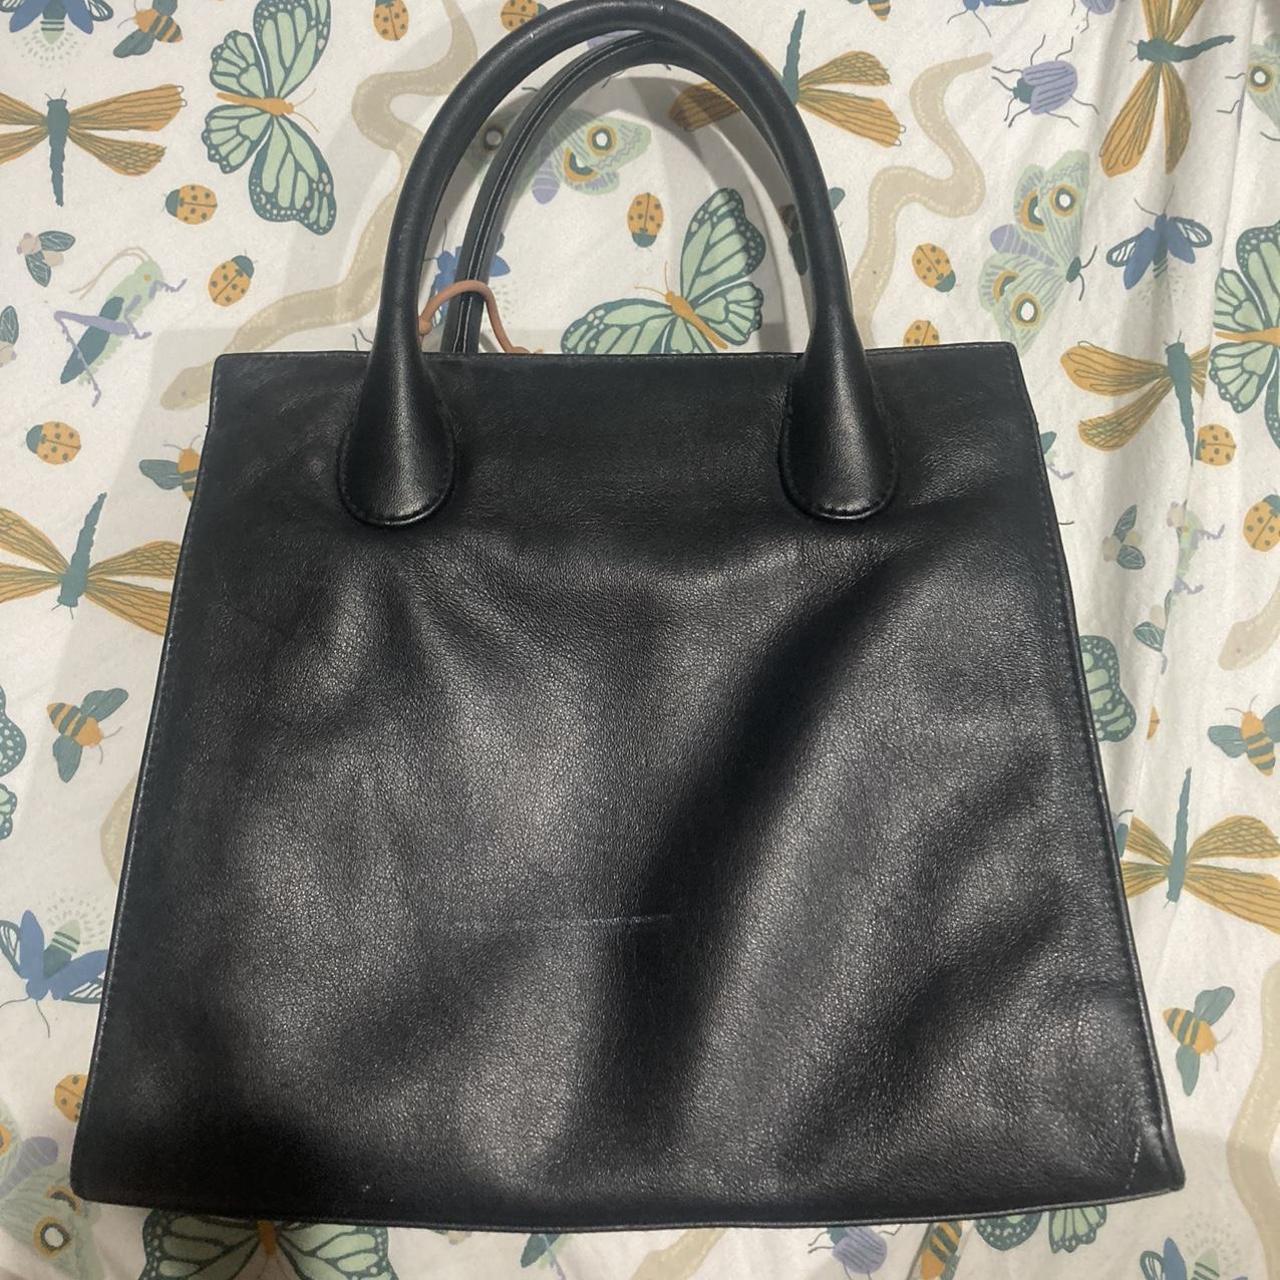 Giani Bernini Women's Black Bag (2)